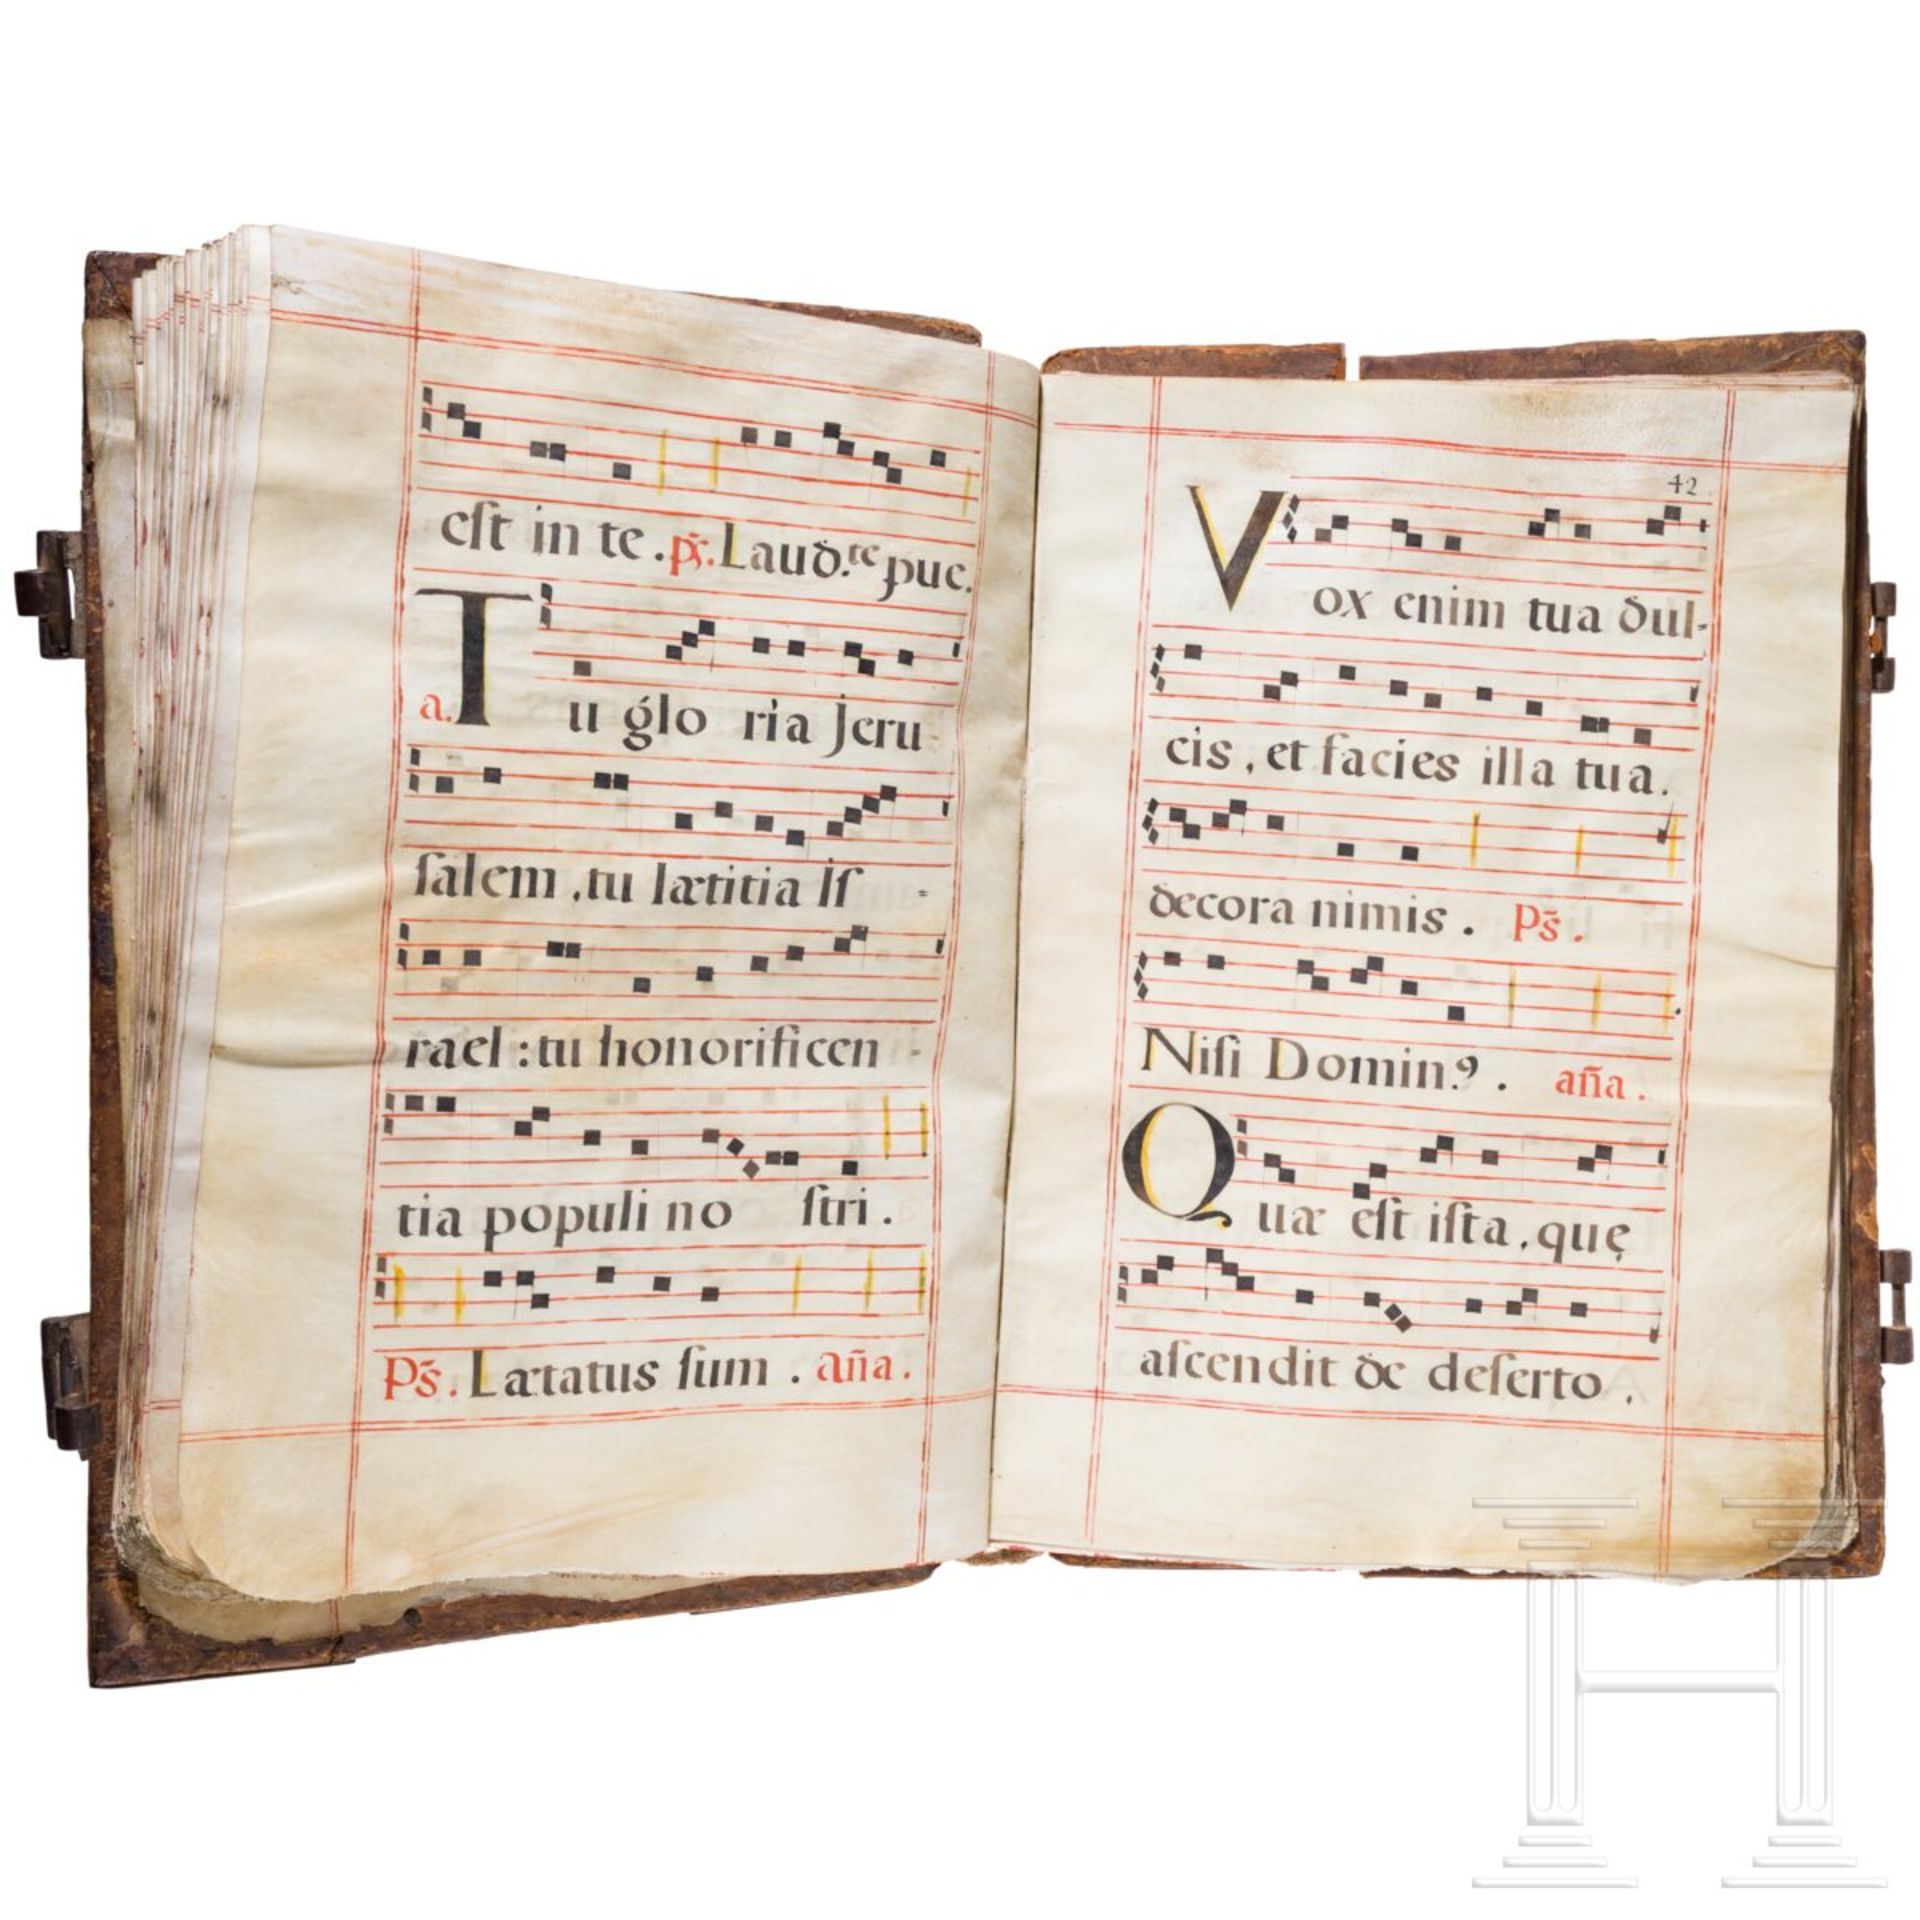 Missale Romanum, Handschrift auf Pergament, Spanien, 16./17. Jhdt. - Bild 3 aus 6